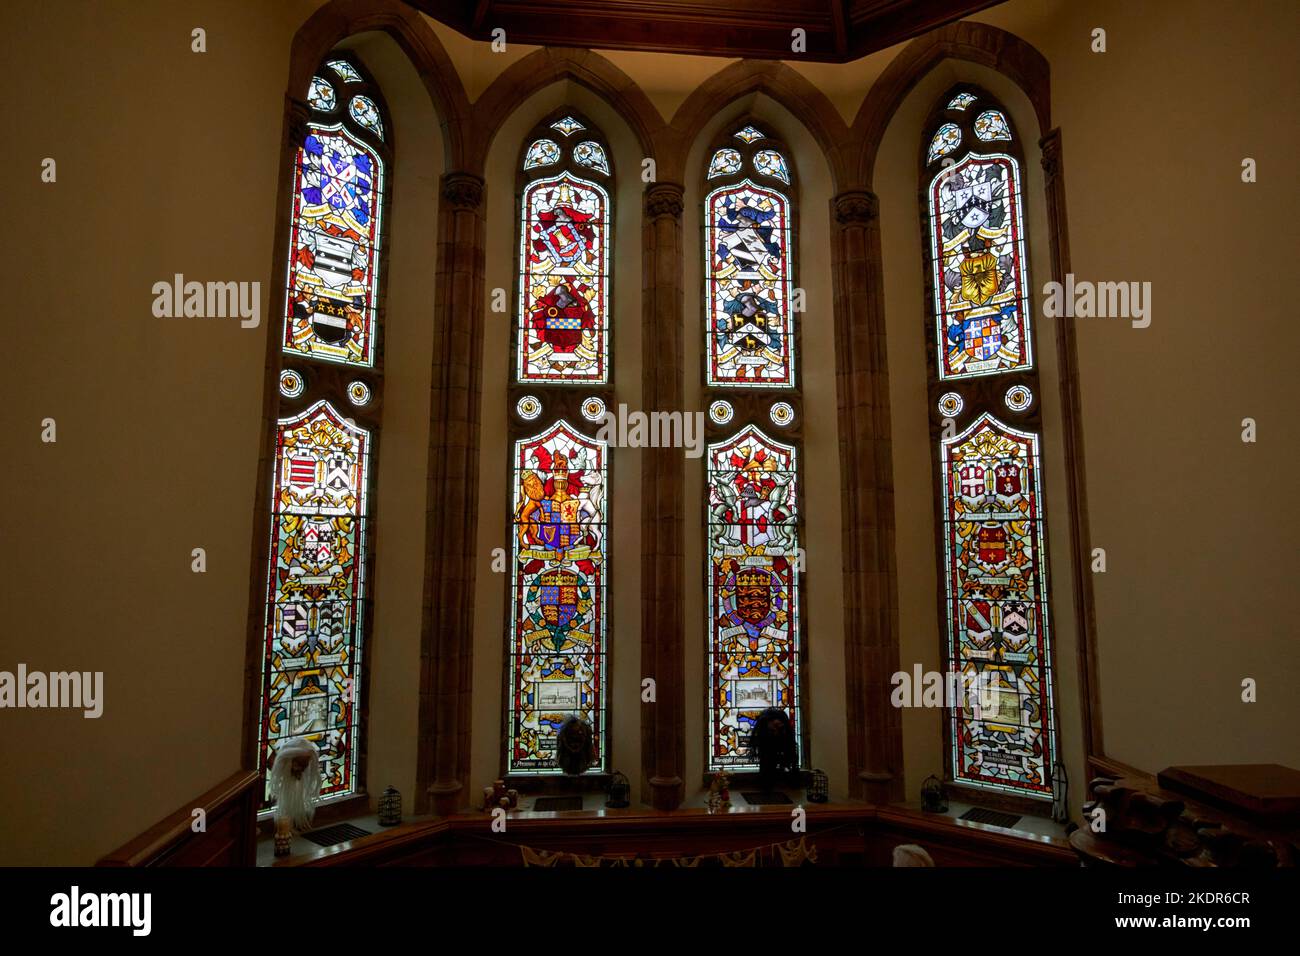 Treppenhaus Buntglasfenster in der guildhall derry londonderry Nordirland großbritannien Stockfoto